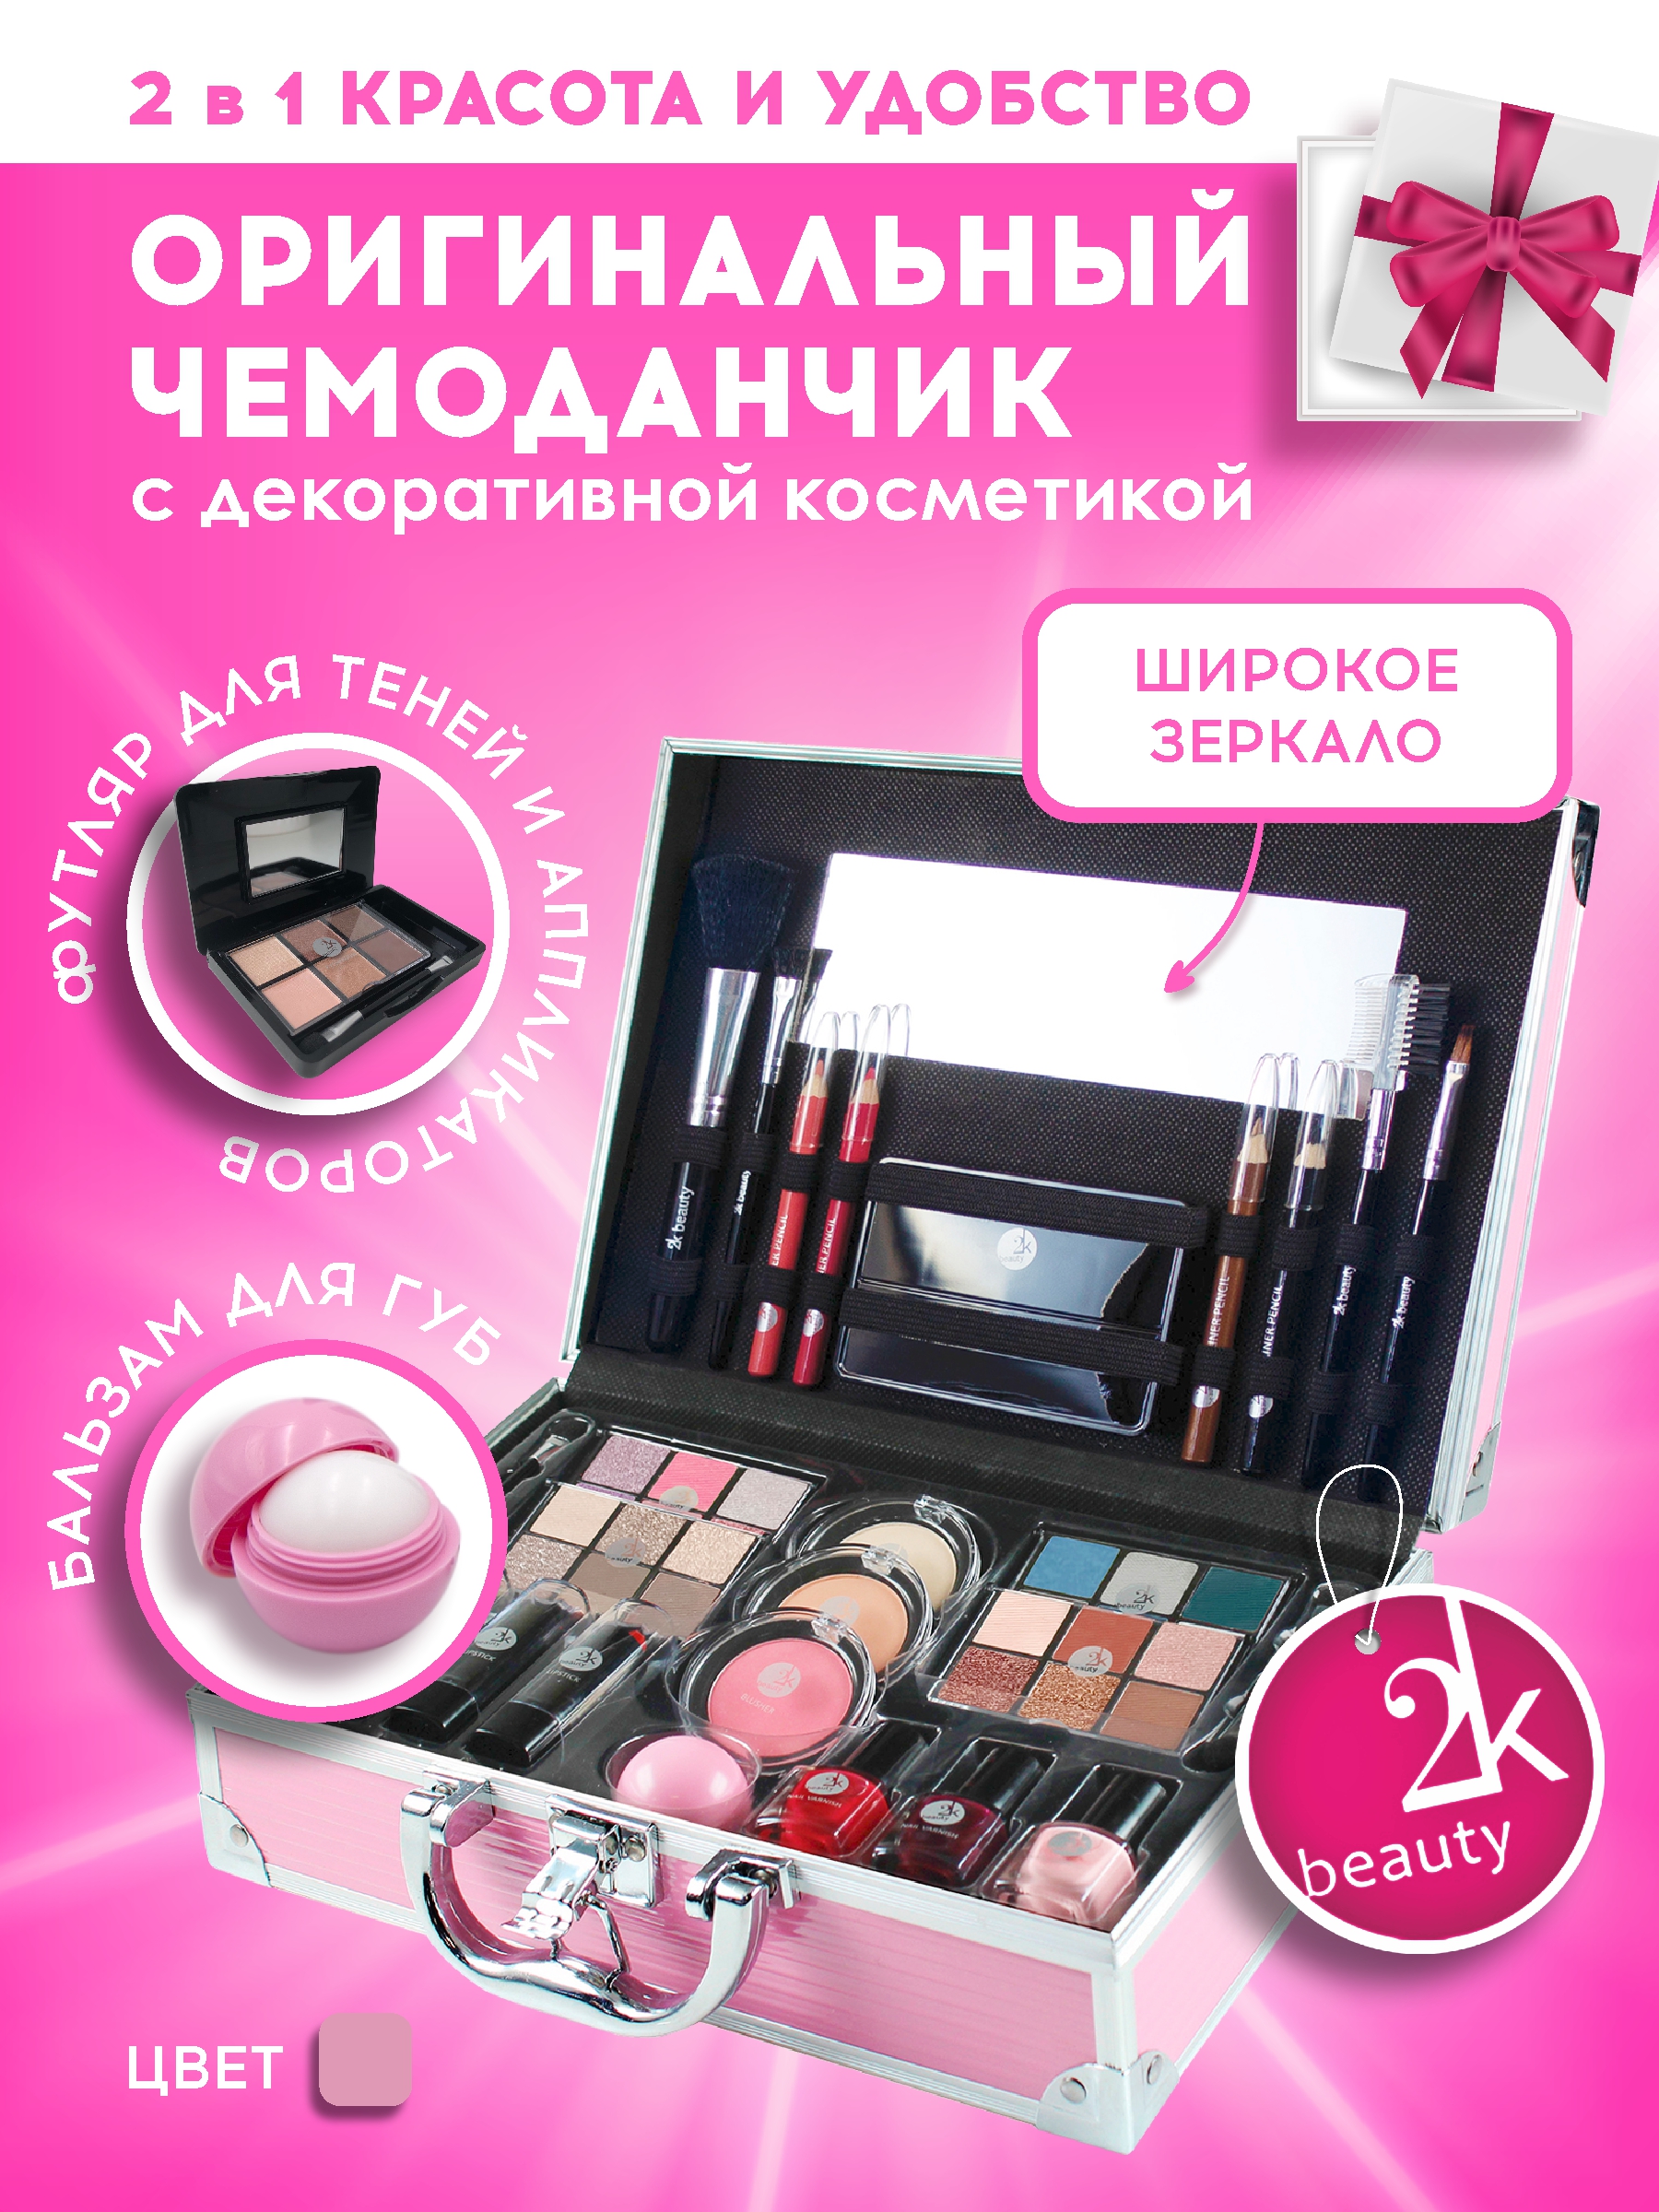 Подарочный косметический набор декоративной косметики 2K Beauty Box №21